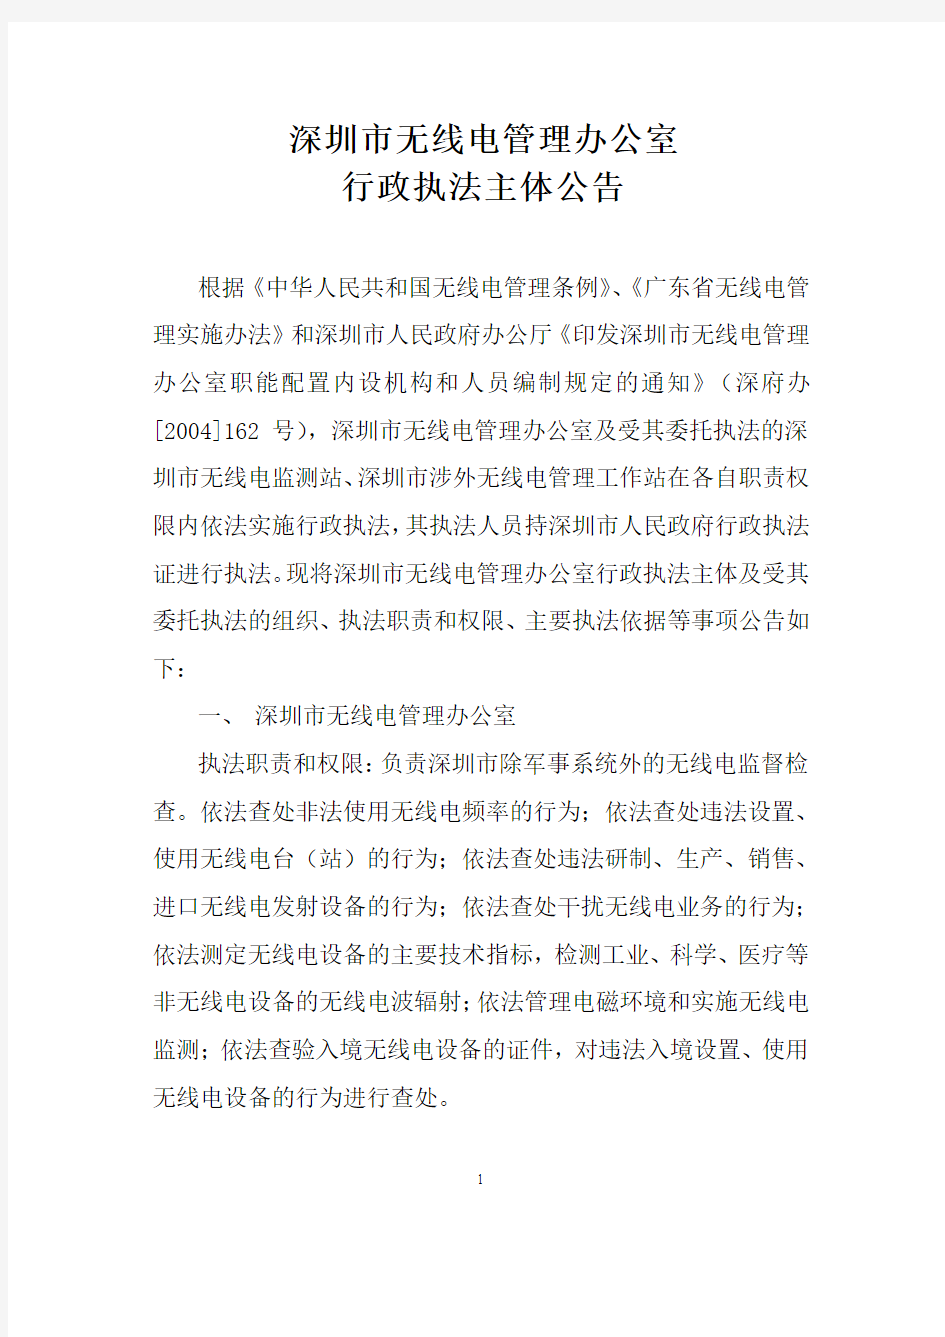 深圳市无线电管理办公室 行政执法主体公告